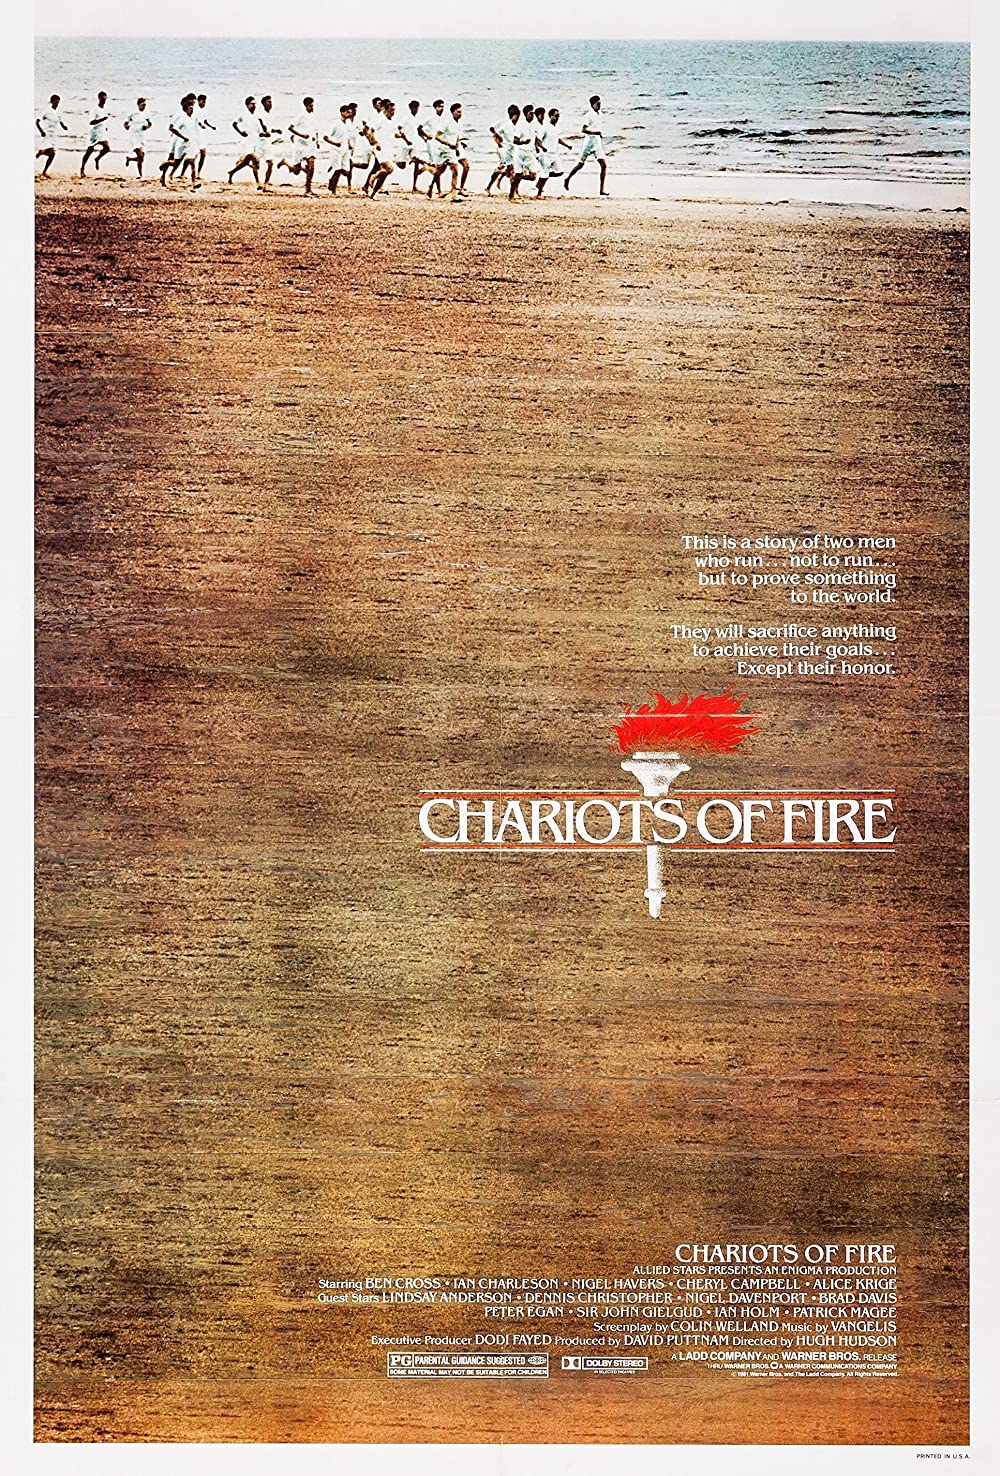 Filmbeschreibung zu Chariots of Fire